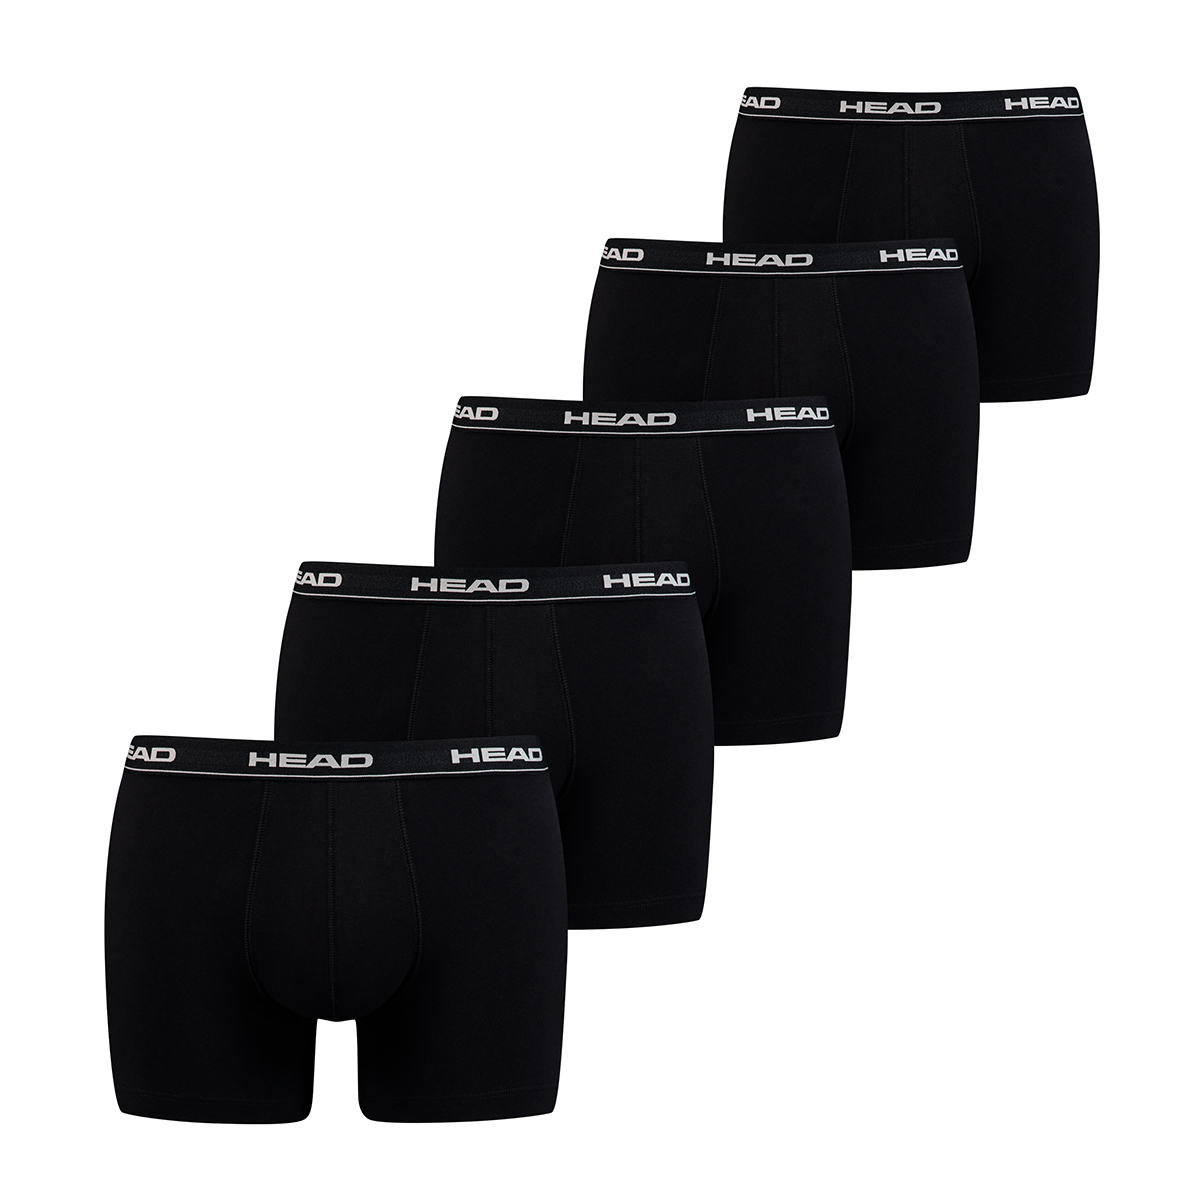 HEAD Mens Men’s Basic Boxers (5 Pack) Boxer Shorts, Black, S (5er Pack)